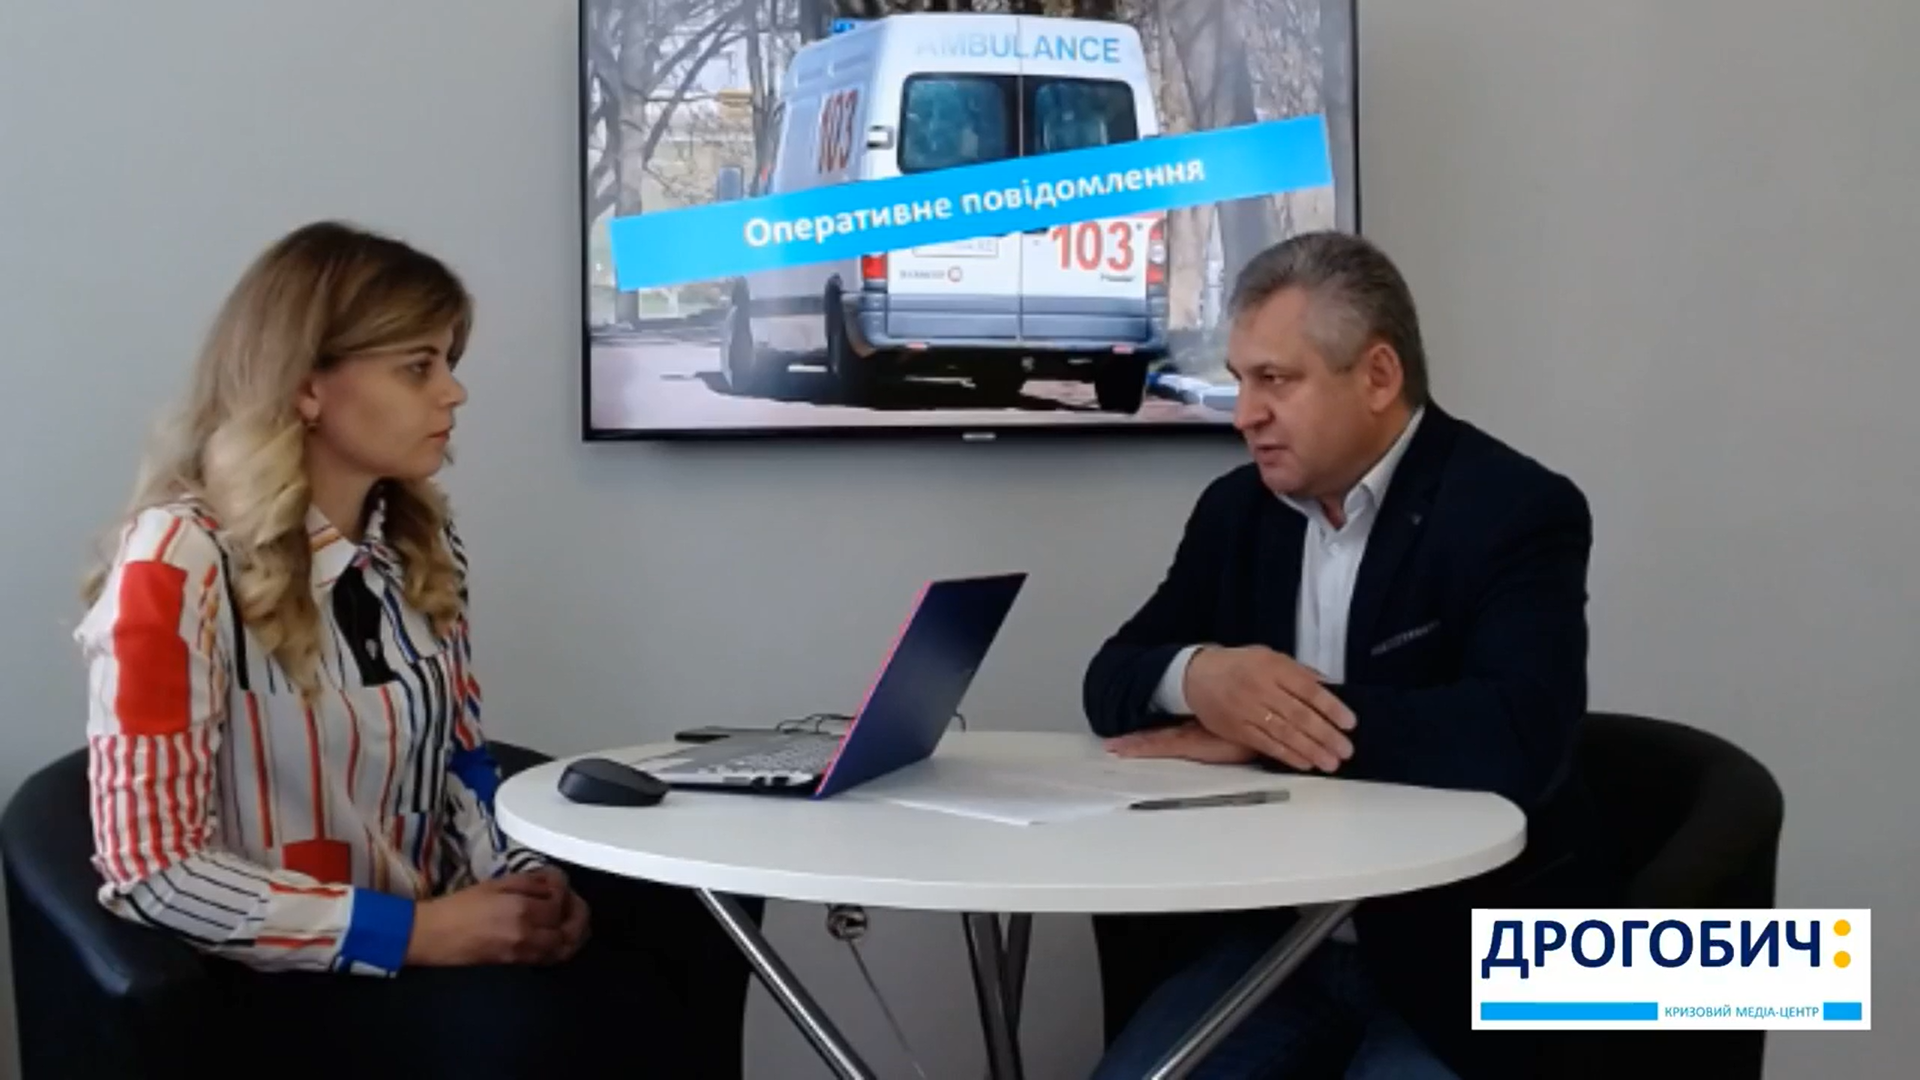 КМЦ «Дрогобич:»: Про ситуацію з хворими на коронавірус медиками у Дрогобицькій поліклініці